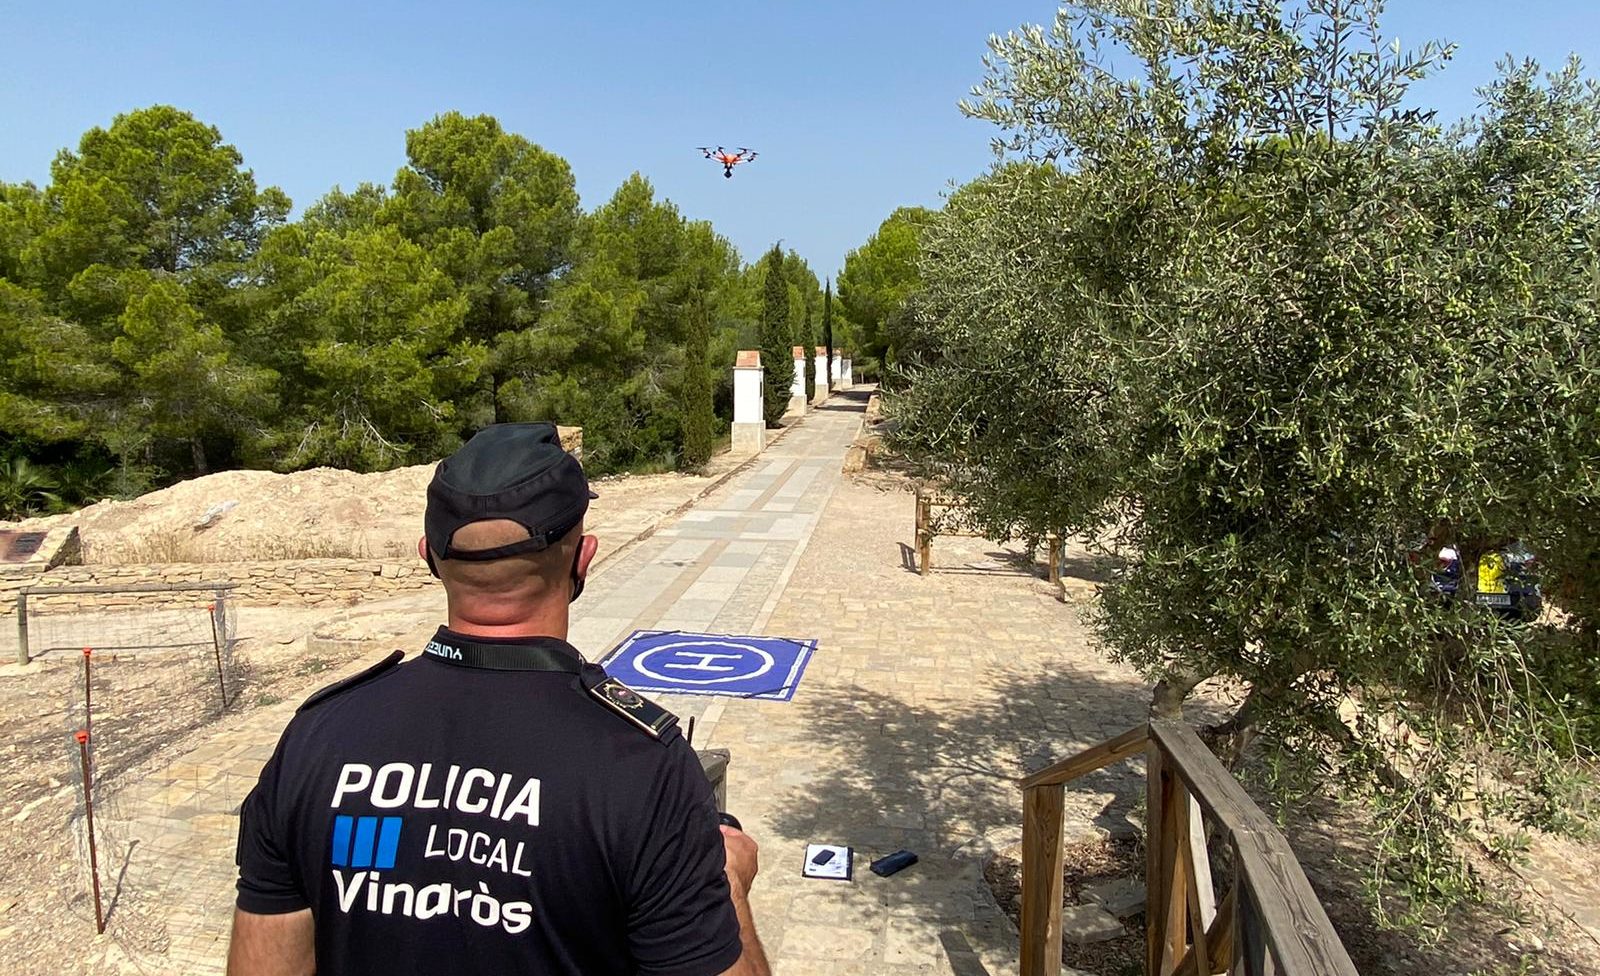 La Policia Local de Vinaròs realitza tasques de vigilància preventiva amb dron